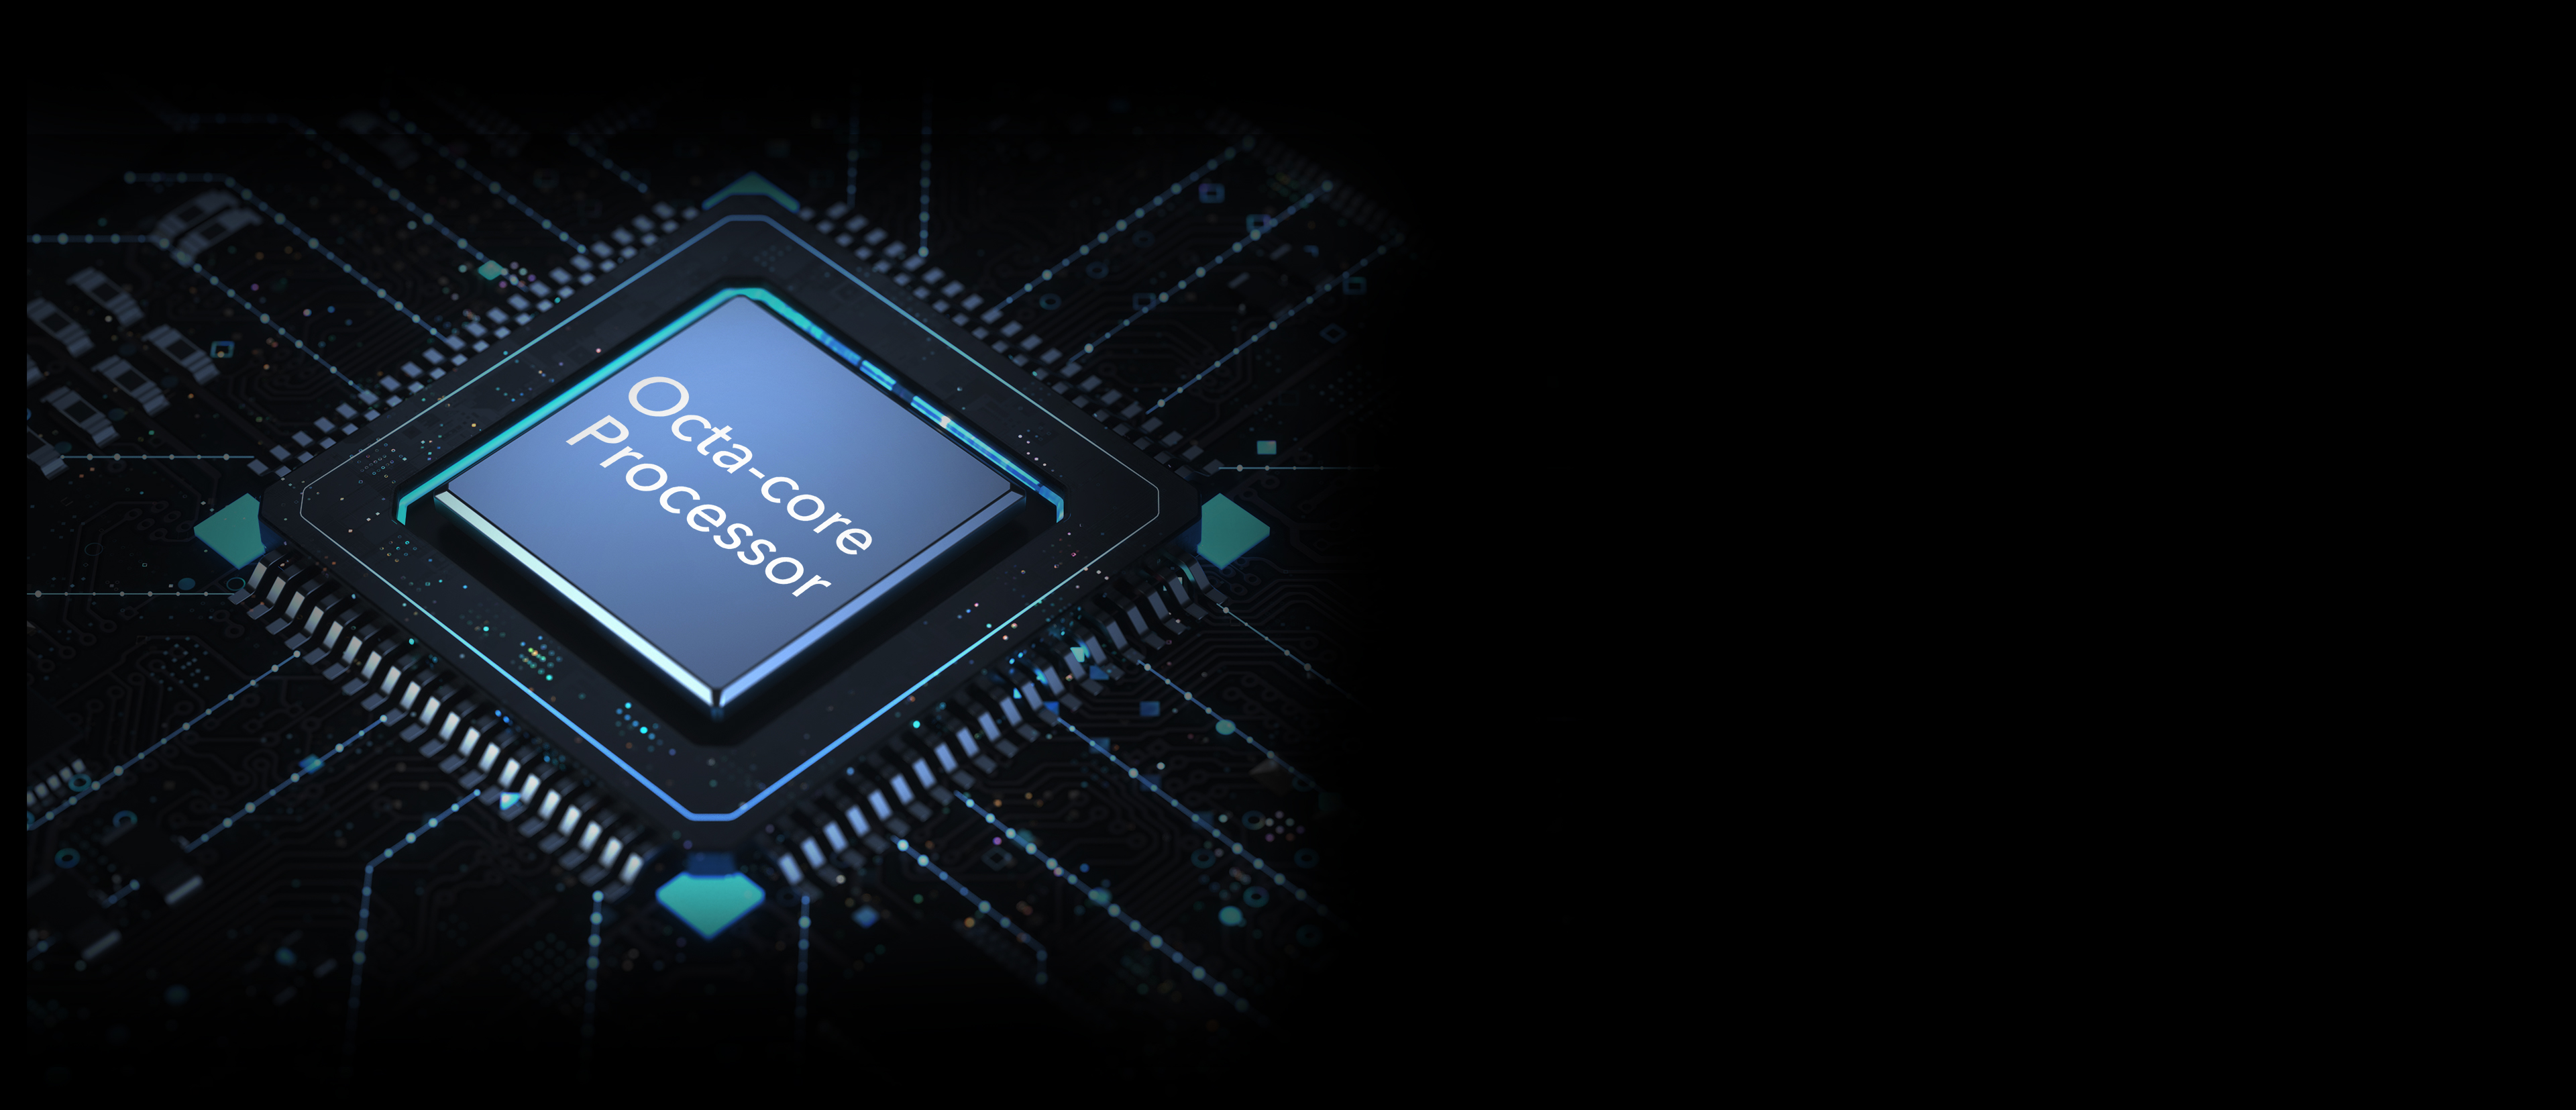 honorX6 Támogatja az akár 1 TB-os microSD-kártyával történő bővítést